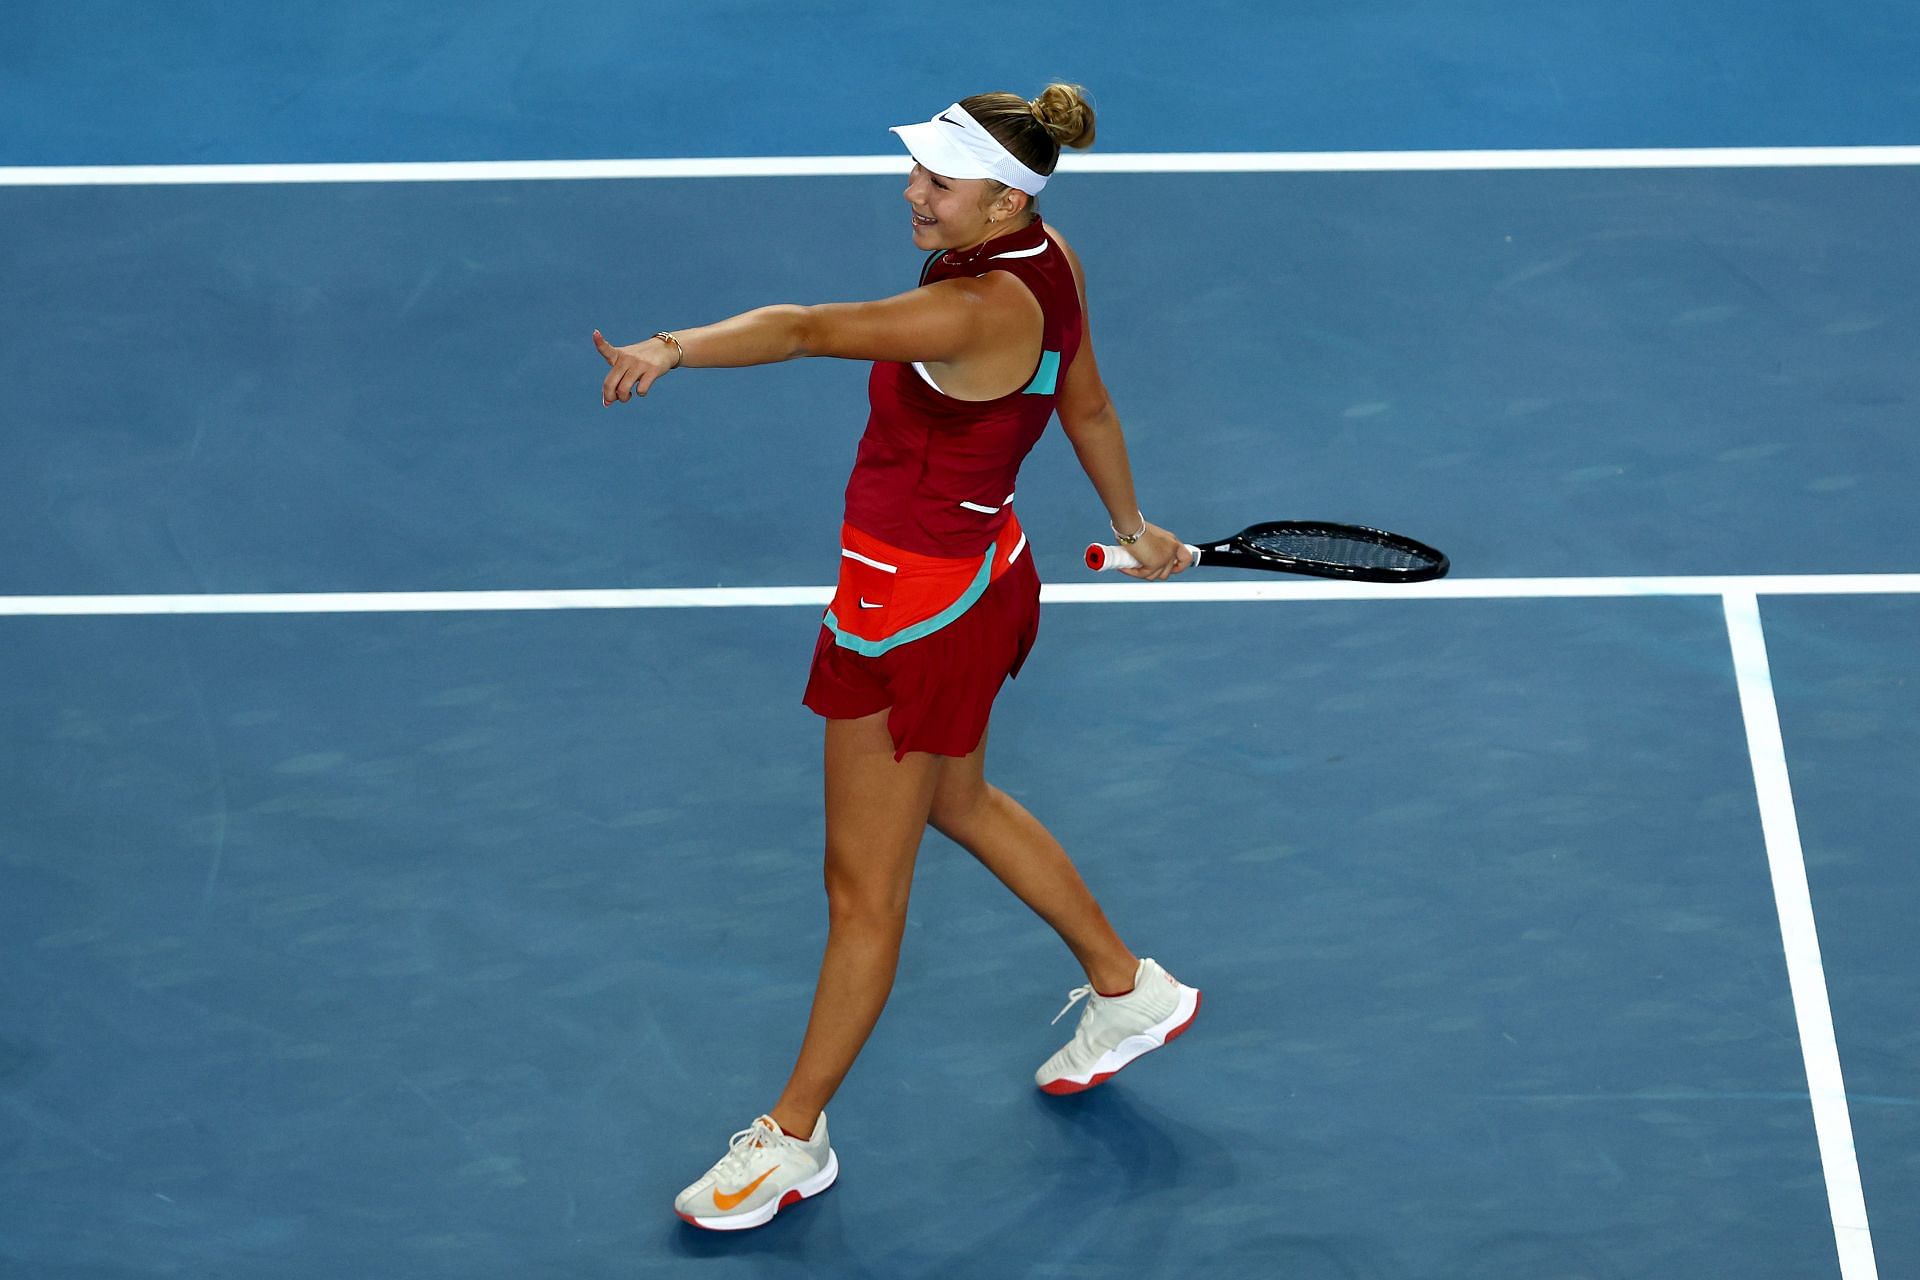 Anisimova at the 2022 Australian Open.